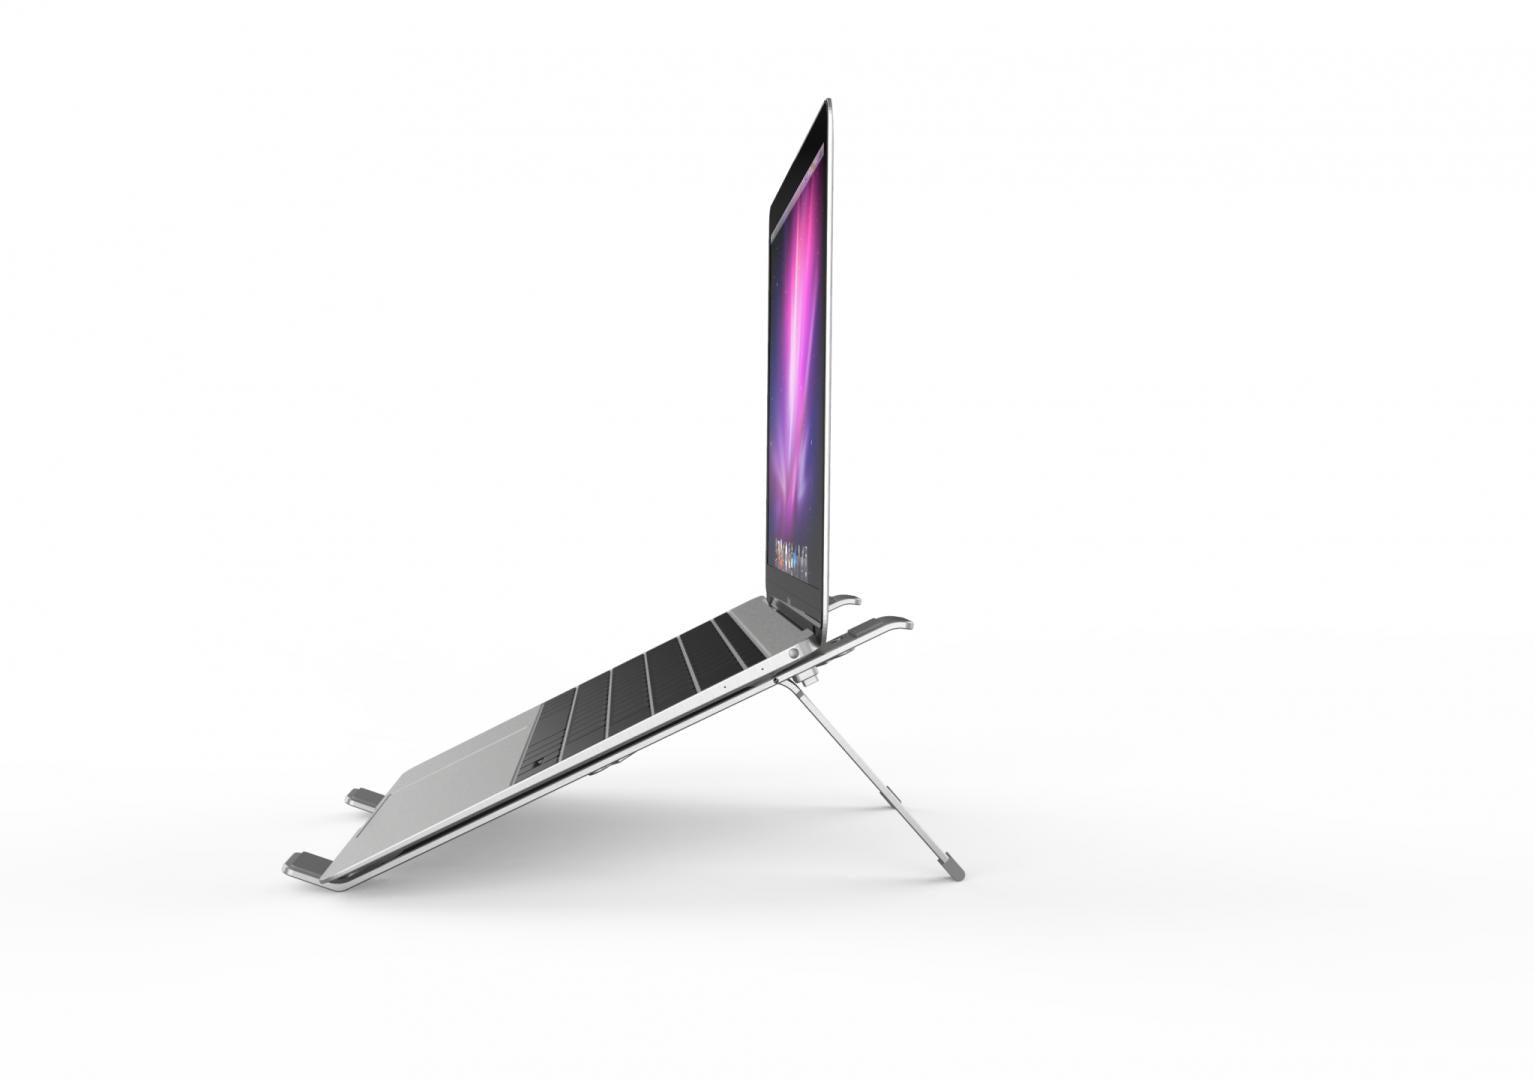 Suport laptop Serioux, SRXNCPU2, material aluminiu, dimensiune deschisă: 190x250x4mm,dimensiune pliată: 60 x 250 x 4mm, grosime: 4mm, greutate: 180g, dimensiune compatibilă: până la 15.6 